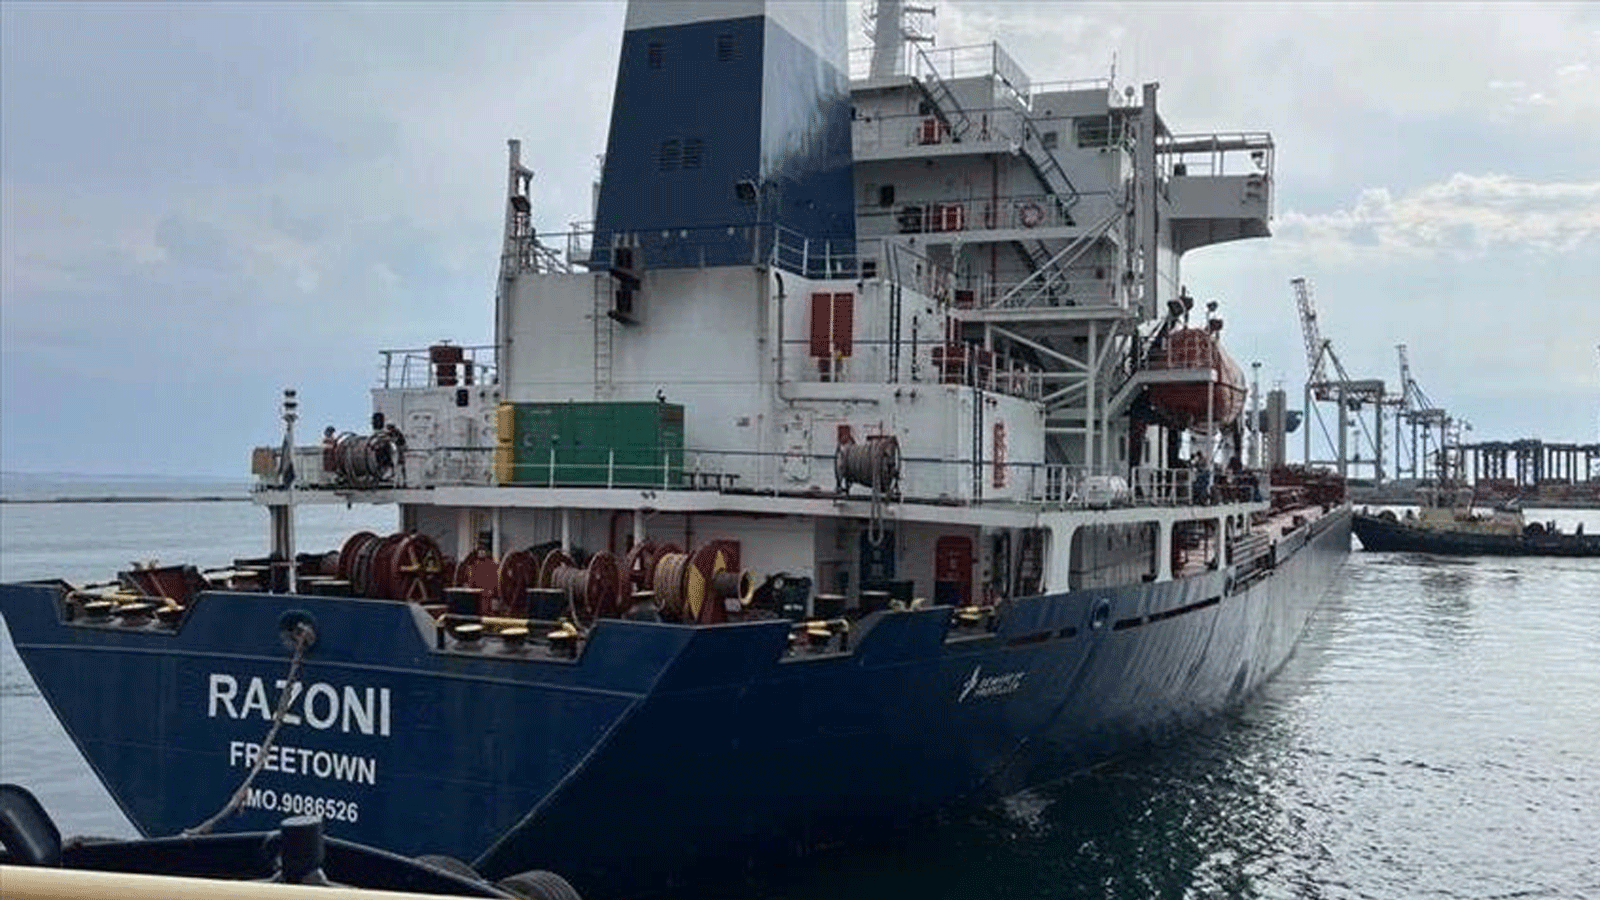 سفينة رازوني المحملة بالحبوب الأوكرانية التي كانت متوجهة نحو لبنان